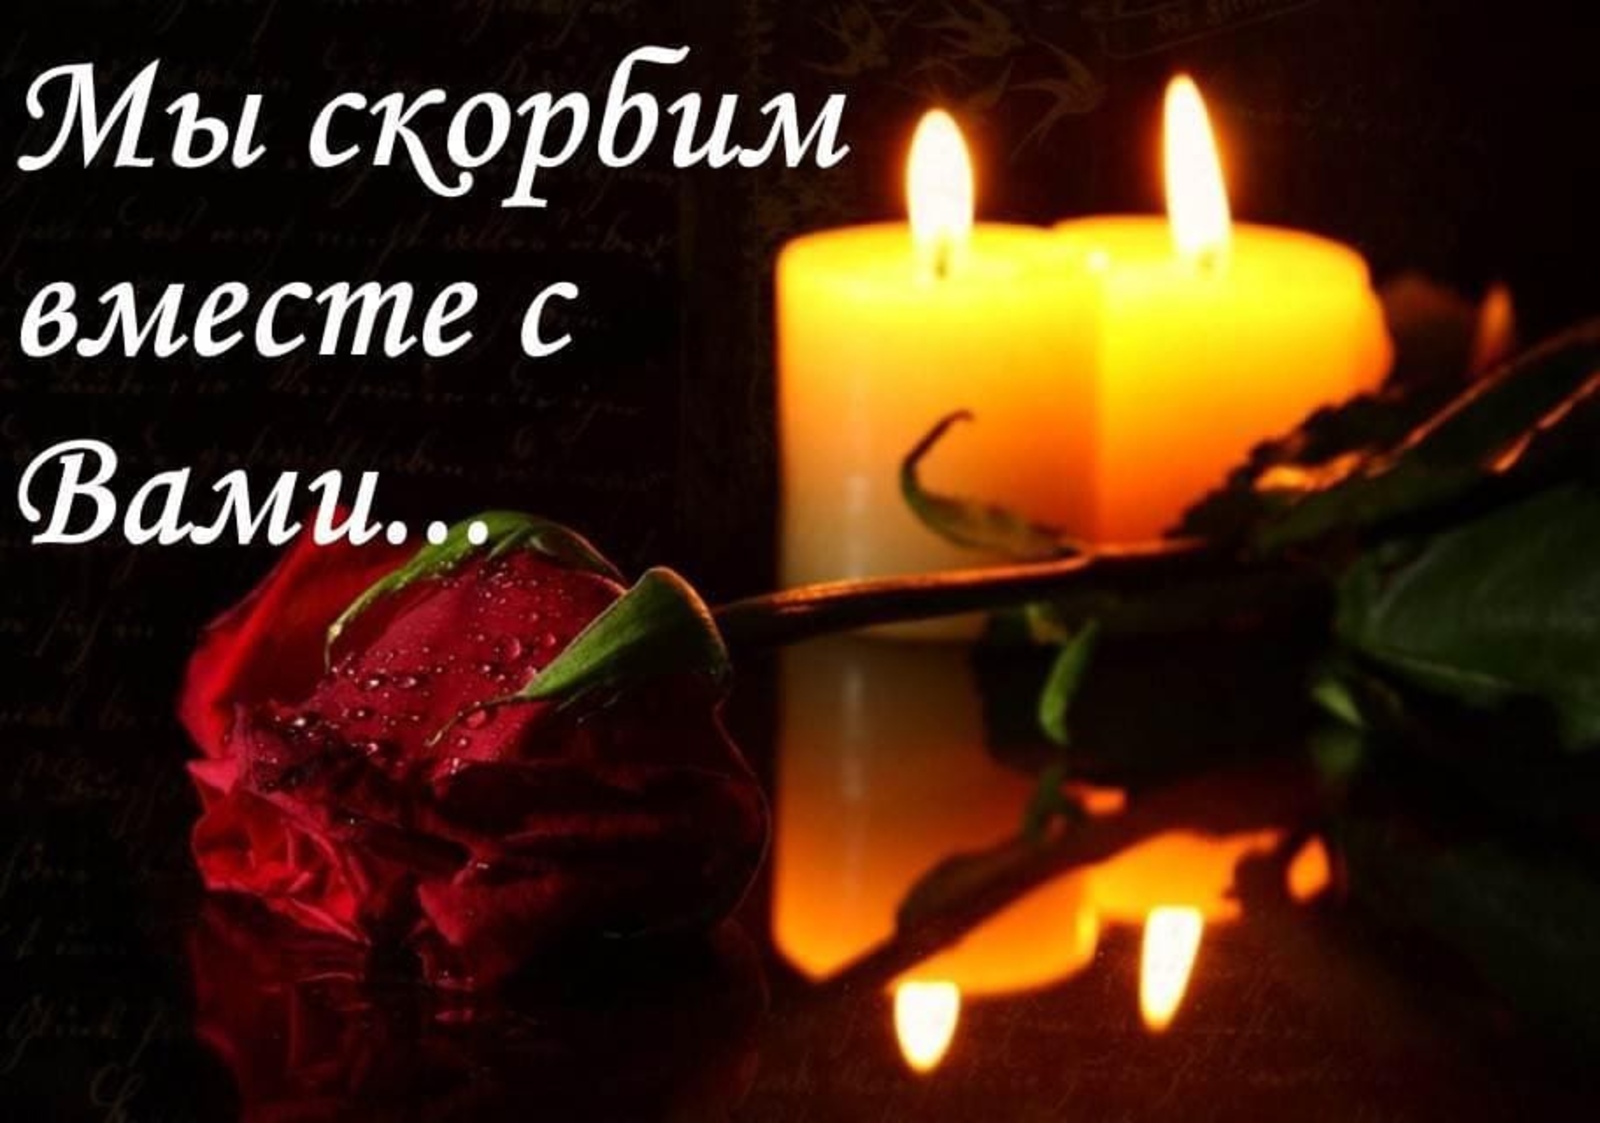 Бесплатные поминальные свечи. Скорбим. Свеча и цветы траур. Поминальная свеча и цветы. Выразить соболезнование.